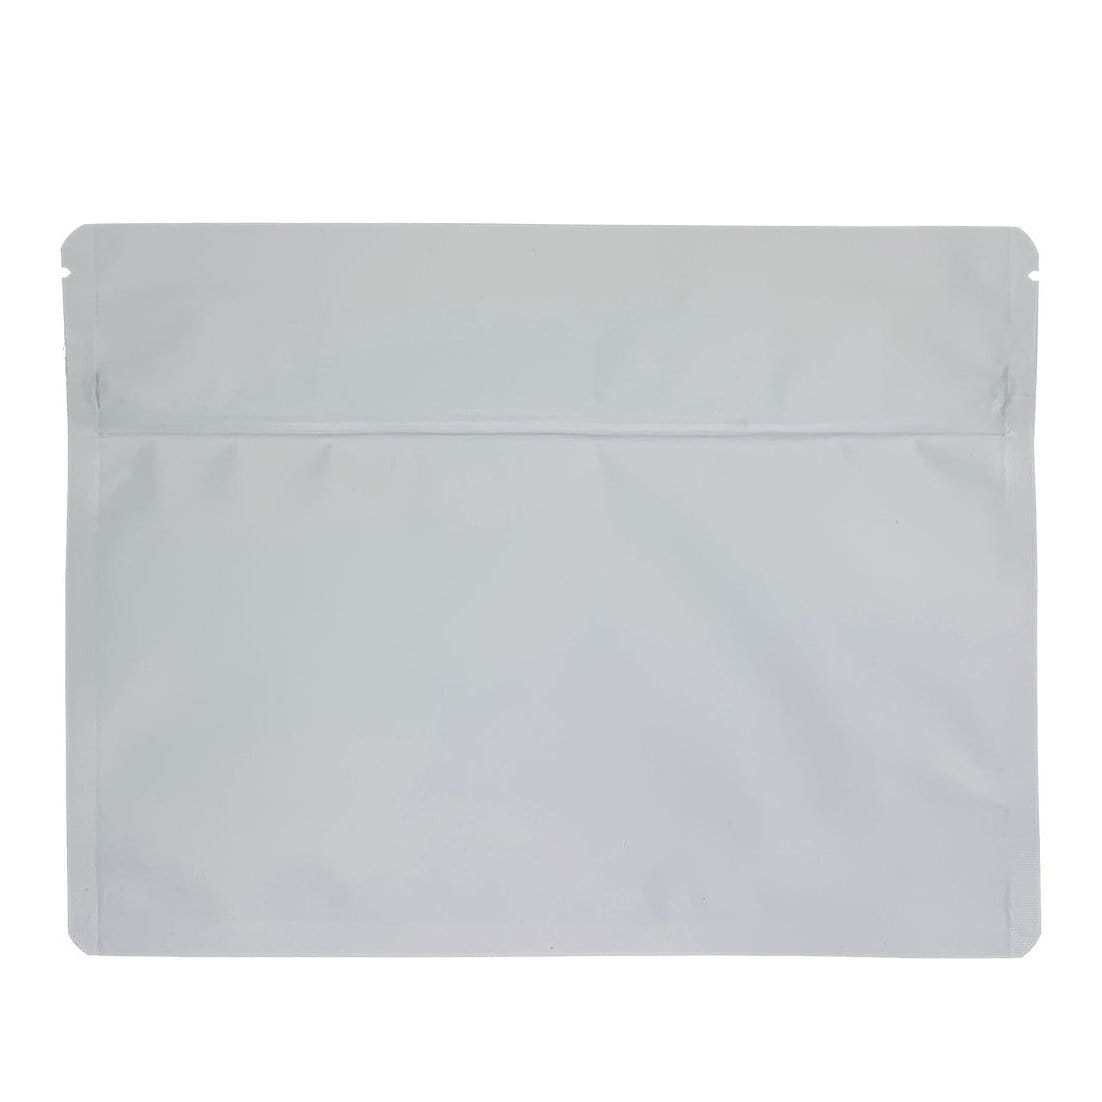 Matte White Bag King Large Child-Resistant Opaque Exit Bag (1/2 lb) 9.0" x 12.0"